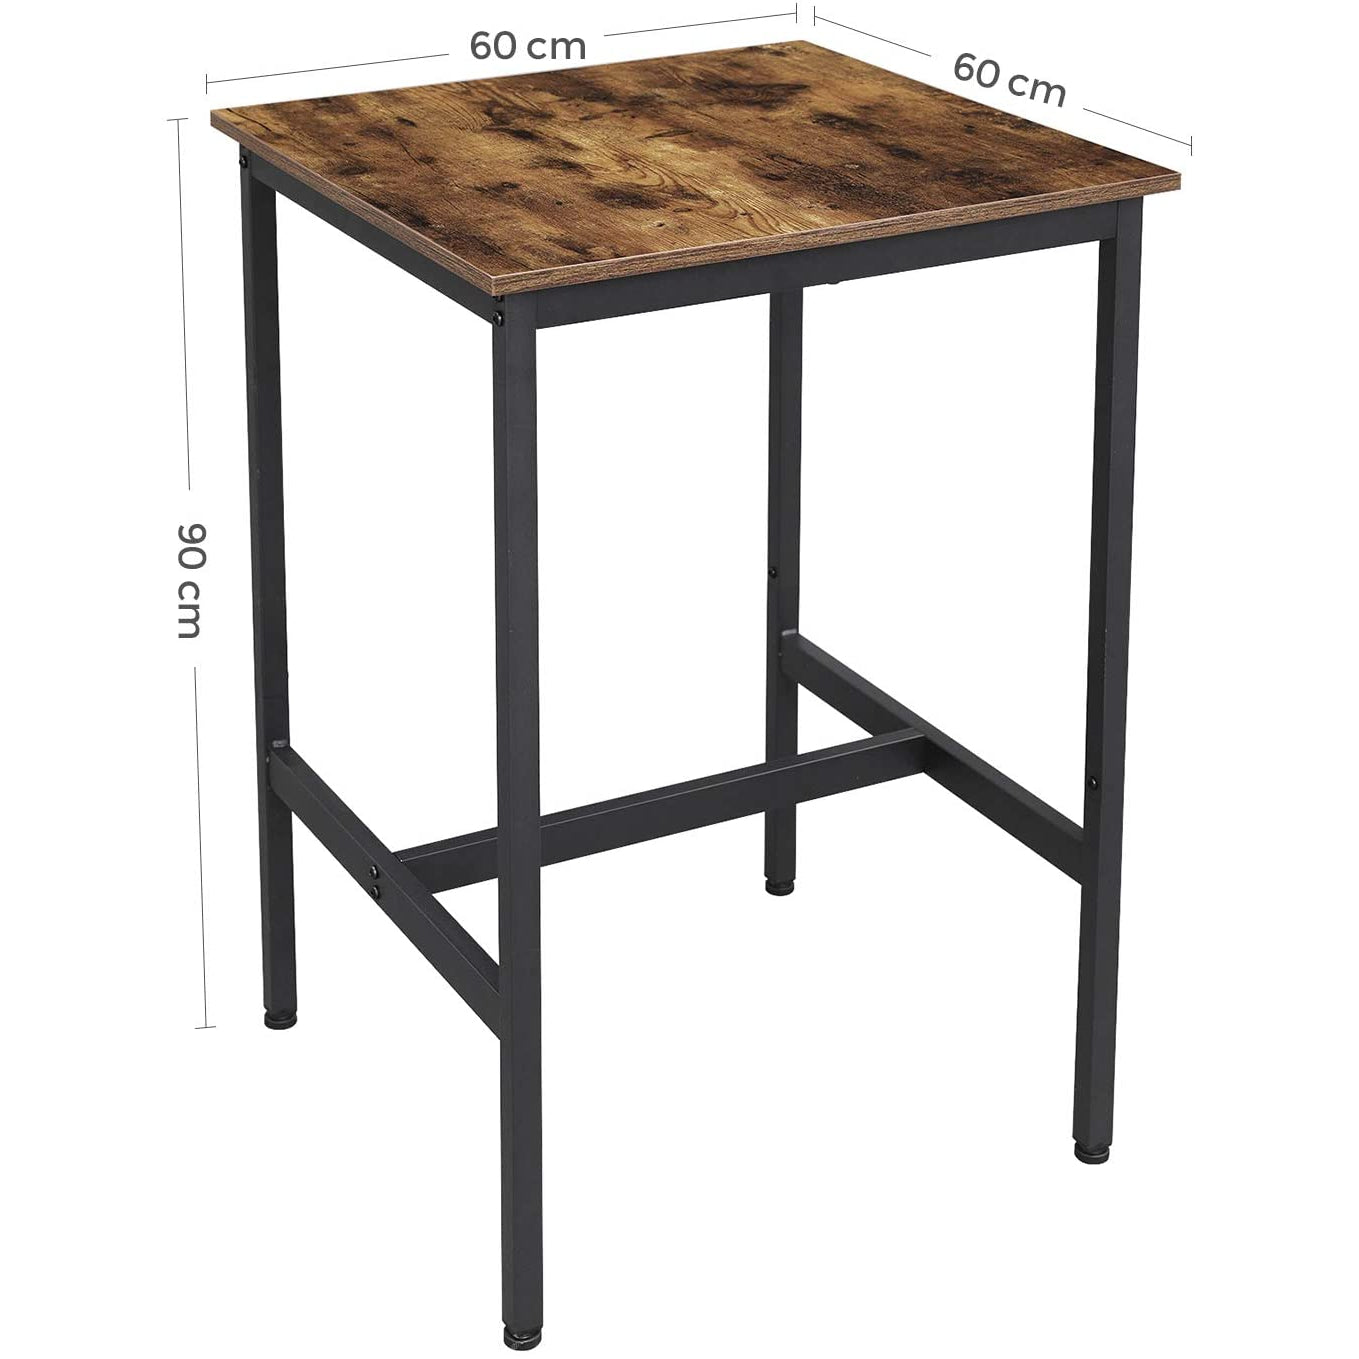 Table de bar en bois de Nancy - Table de cuisine vintage - Tables de bar de cuisine - Bureau haut - Industriel - Bois &amp; Métal - 60 x 60 x 90 cm